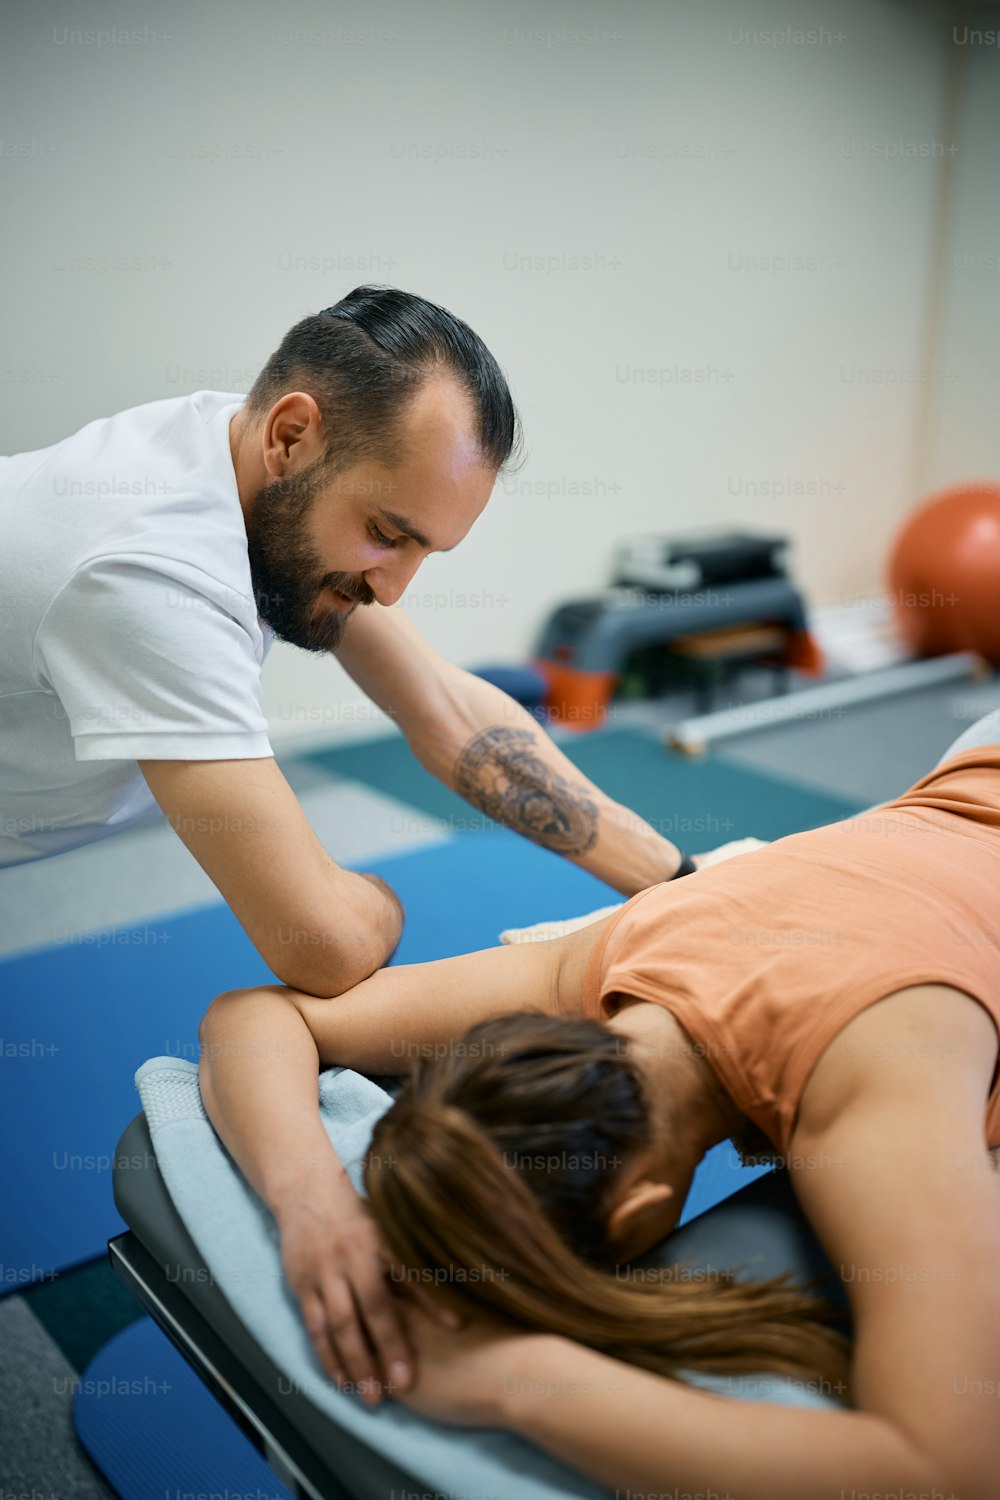 Kinésithérapeute masculin donnant un massage sportif à une femme dans un club de santé.